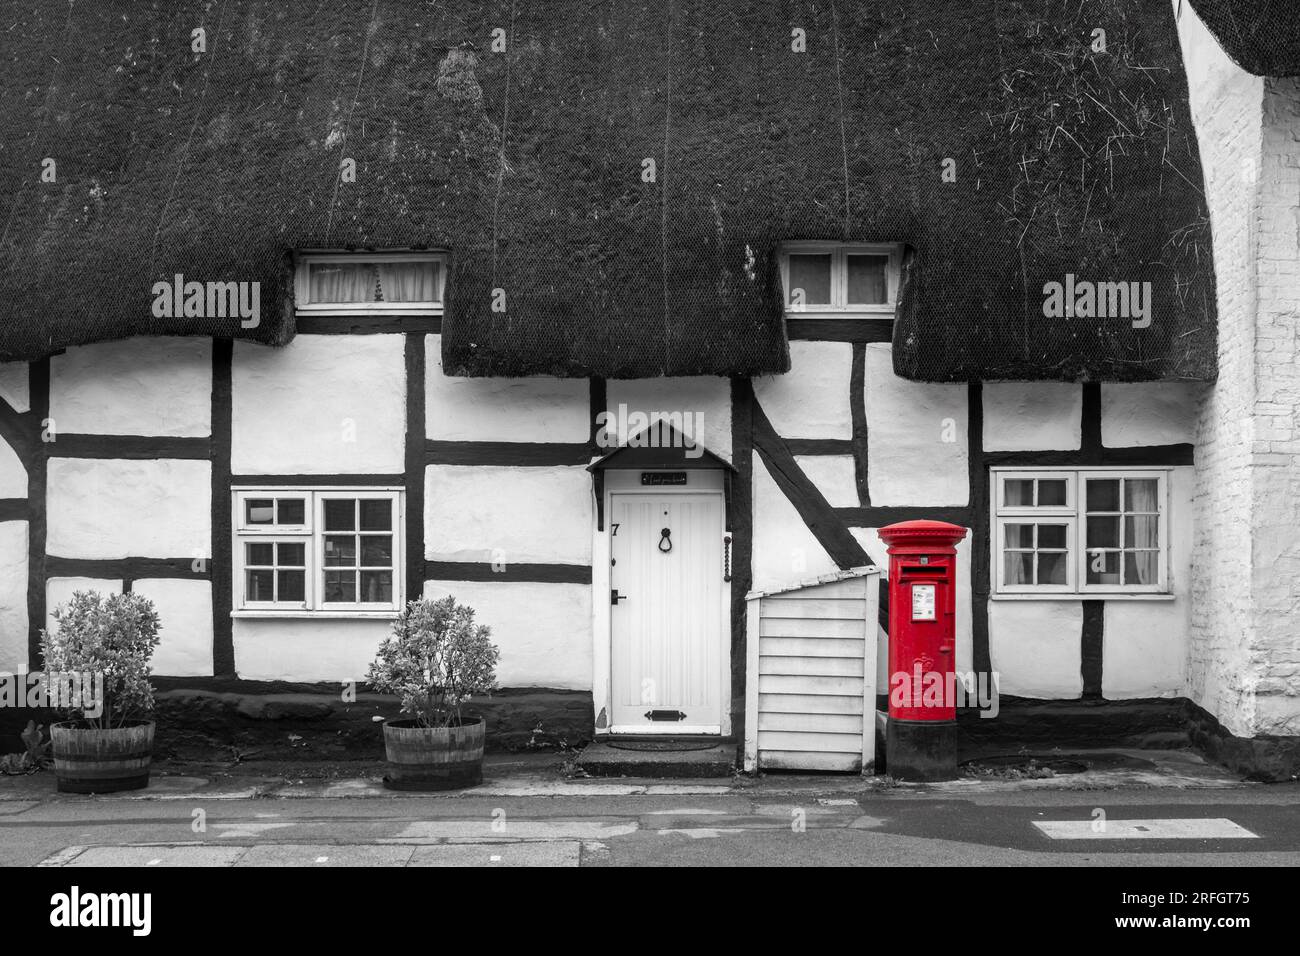 Chaume cottage avec boîte aux lettres rouge, monochrome avec éclaboussures de couleur, Marlborough, Wiltshire, Angleterre, Royaume-Uni Banque D'Images